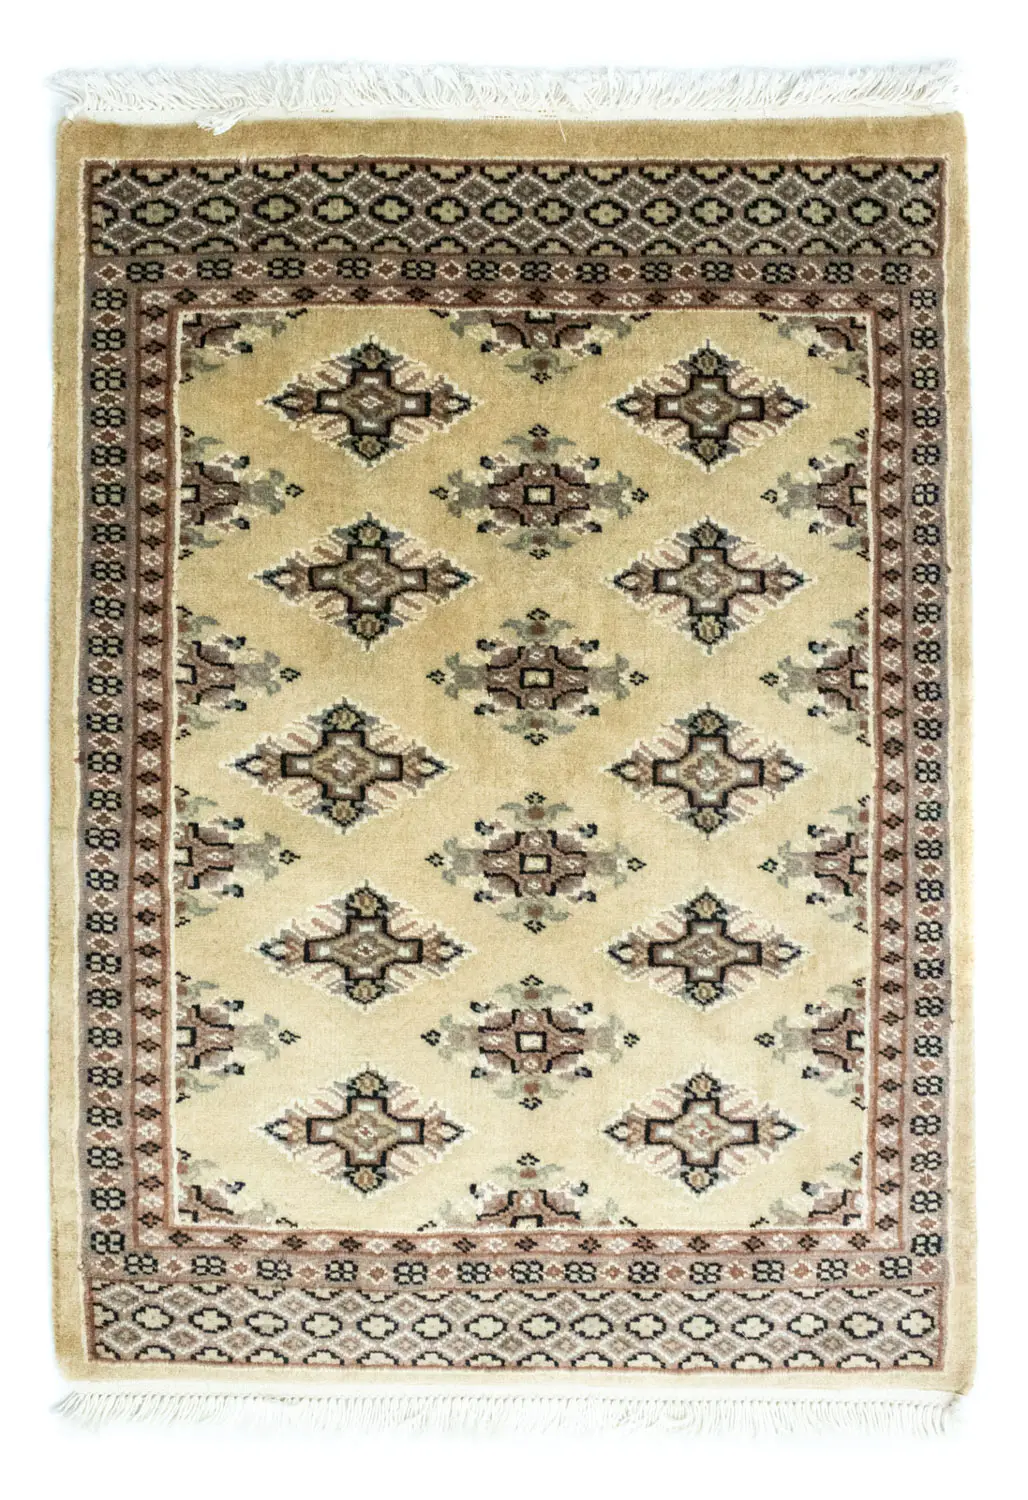 Pakistan Teppich - 87 x 62 cm - beige